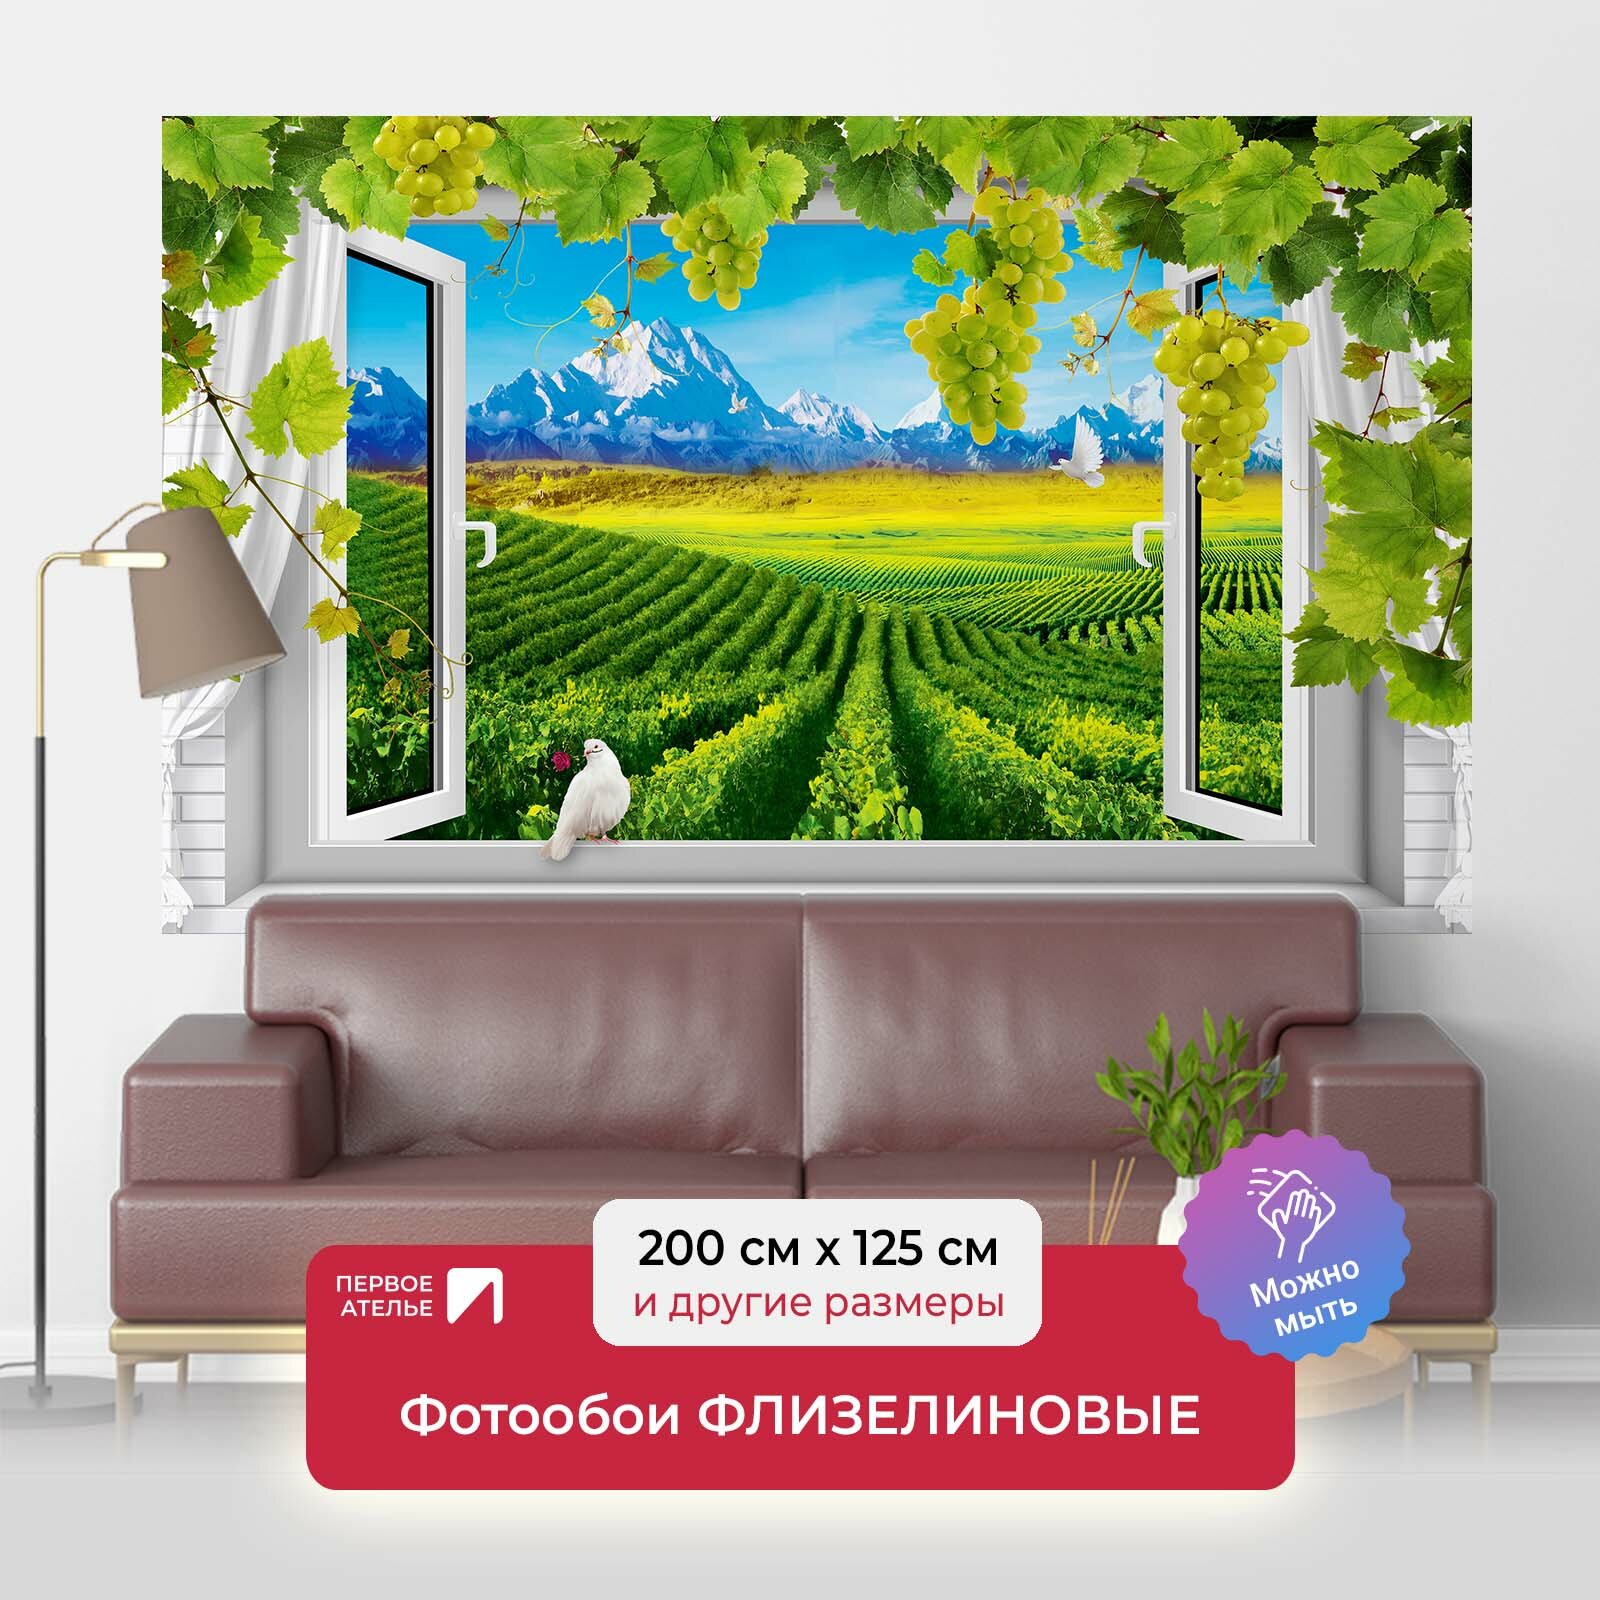 Фотообои на стену первое ателье "Вид из окна на виноградники" 200х125 см (ШхВ), флизелиновые Premium